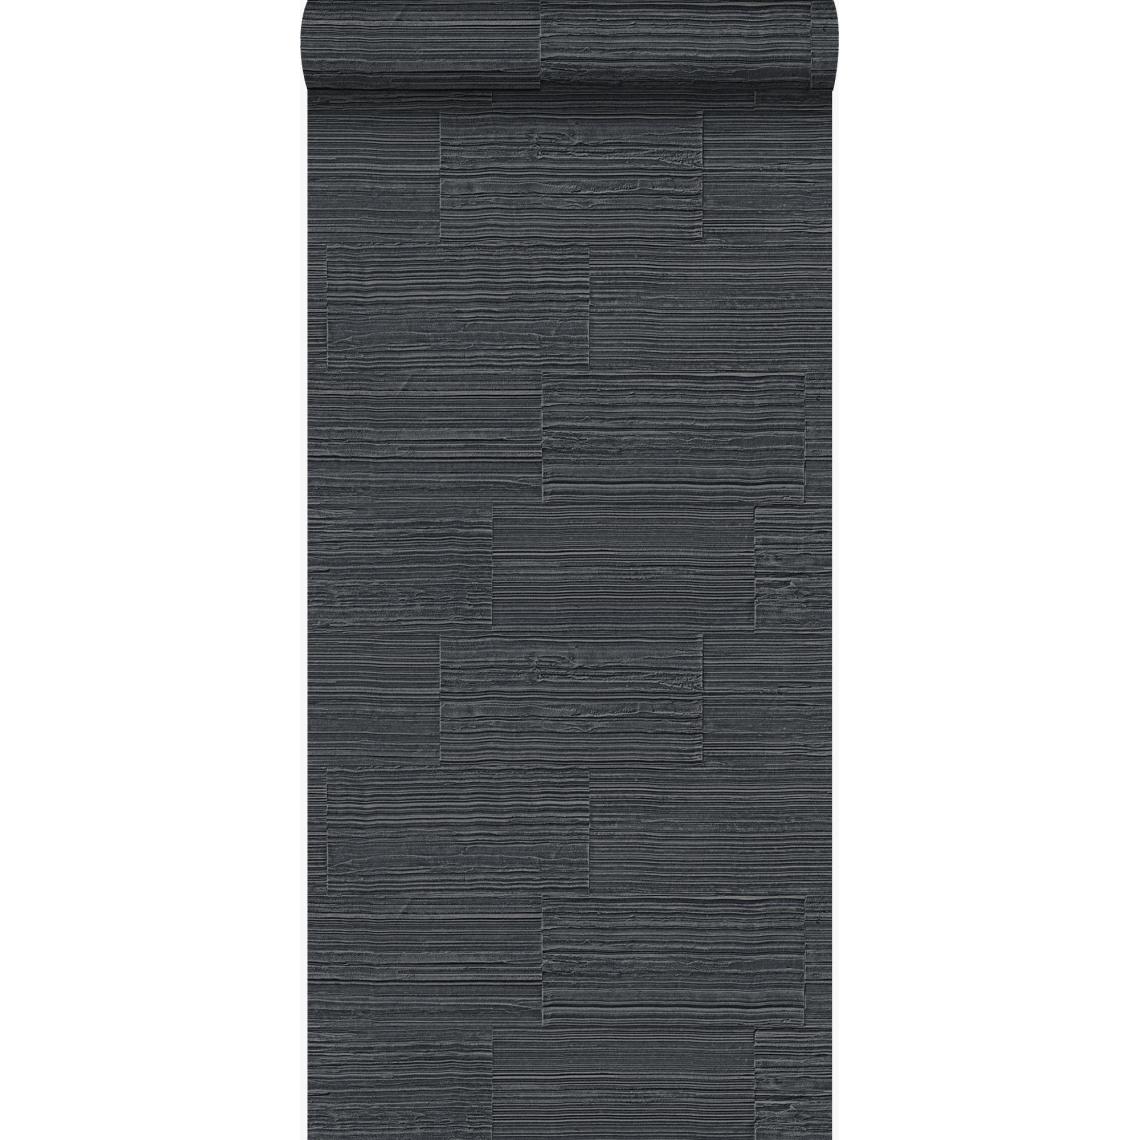 Origin - Origin papier peint pierre naturelle brute rétro en appareil de panneresses noir - 347572 - 53 cm x 10.05 m - Papier peint